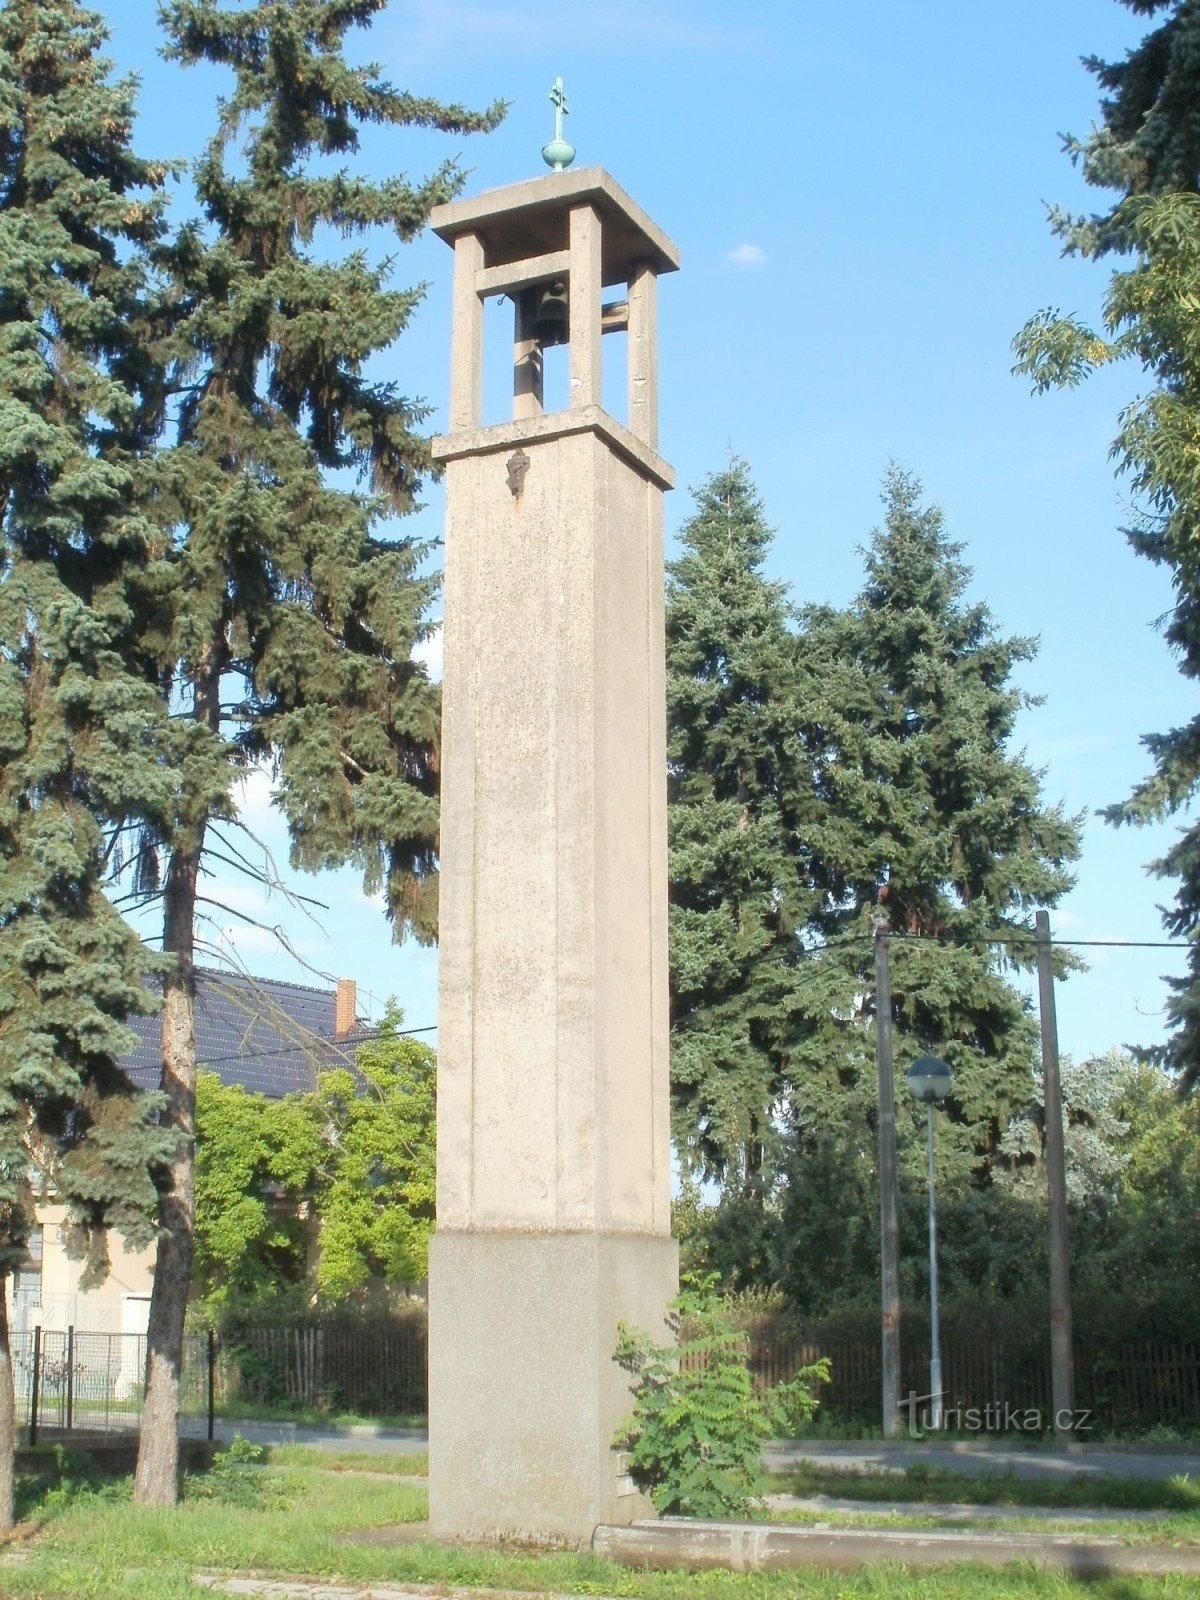 Hradec Králové - zvonik u Pouchovu